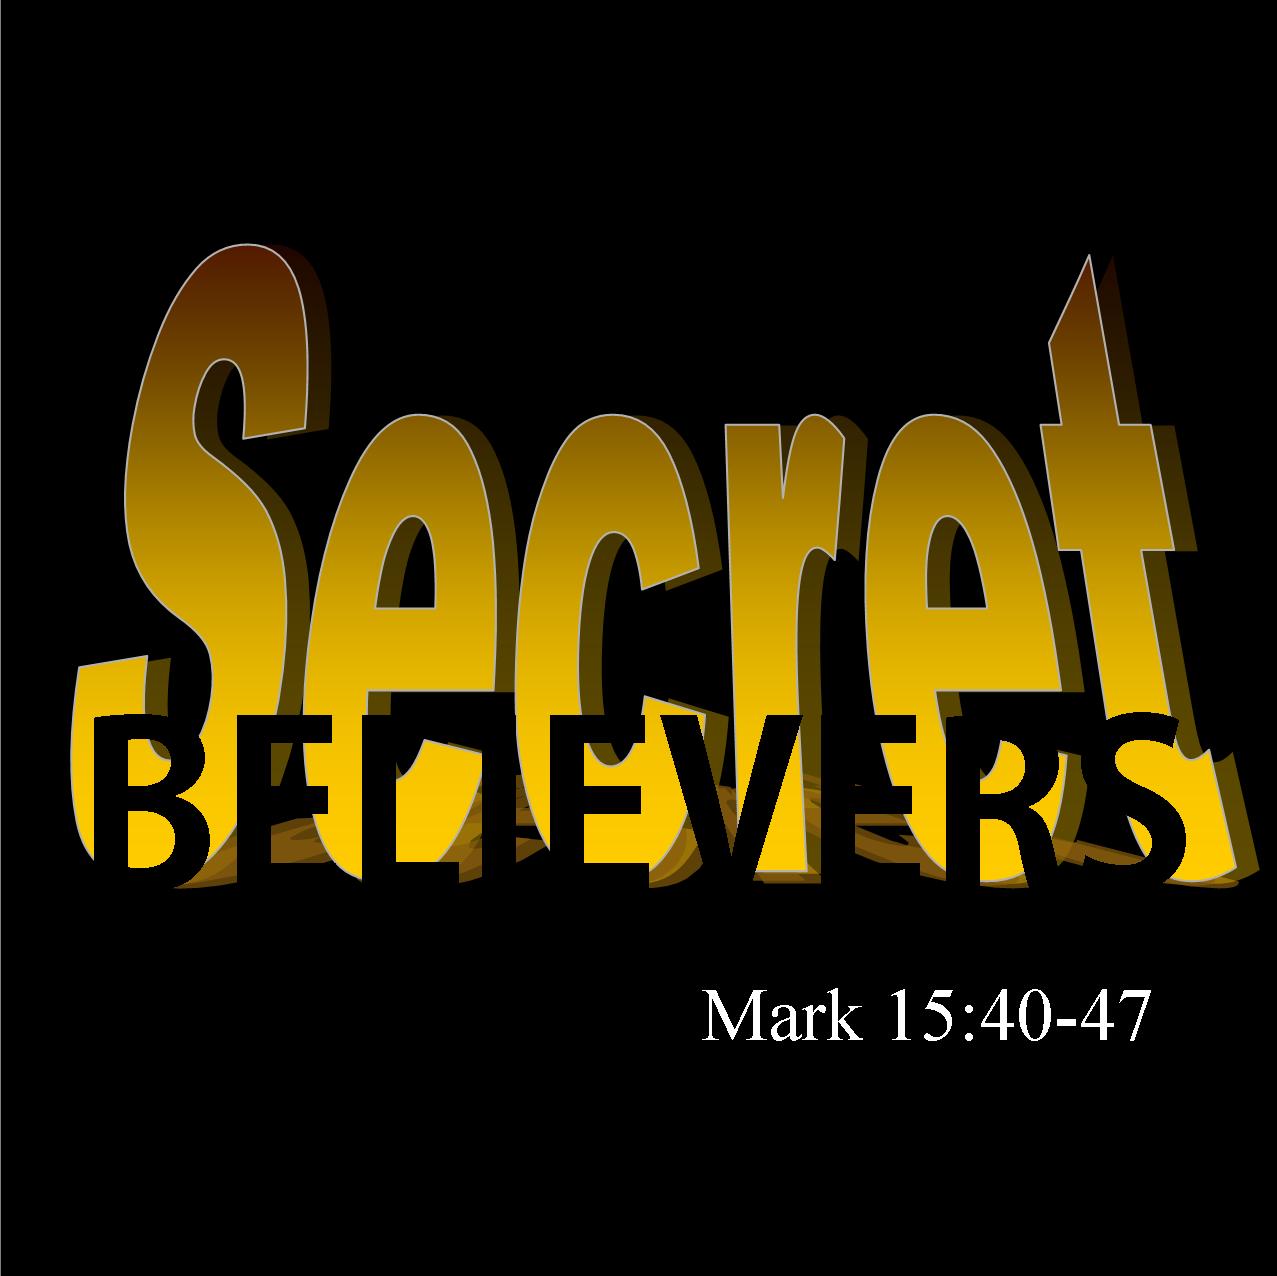 Secret Believers - Mark 15:40-47